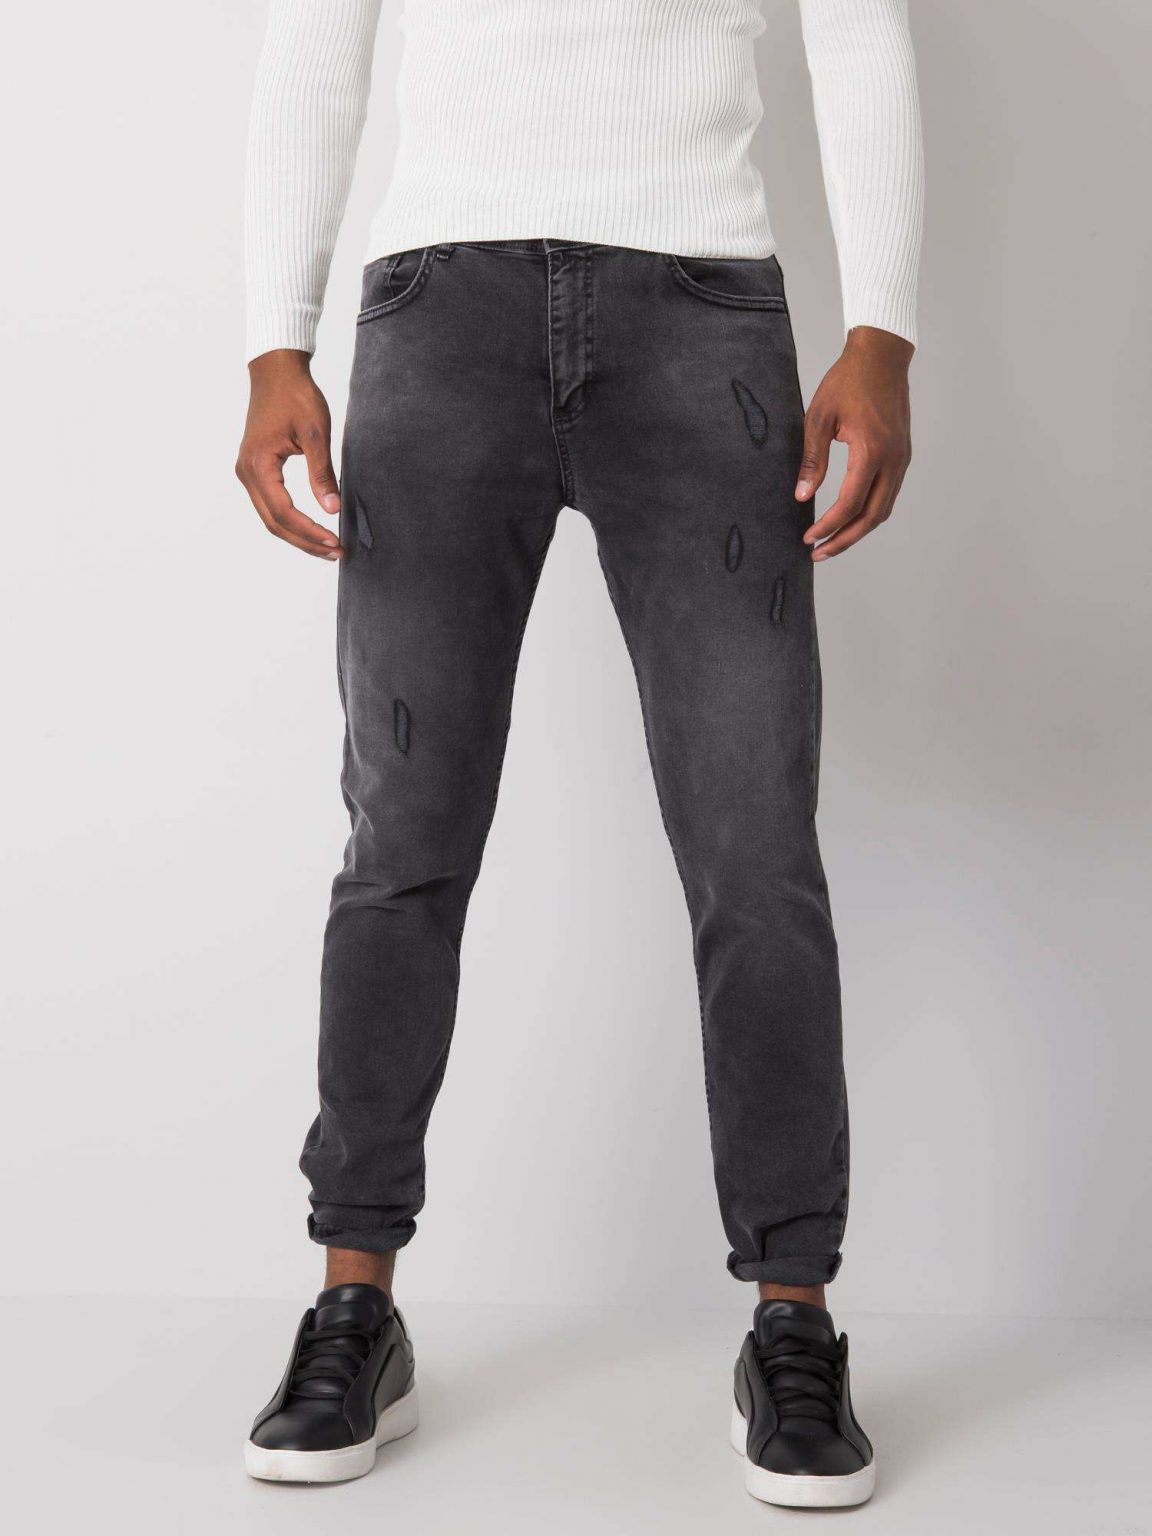 Czarne męskie spodnie jeansowe z przetarciami Jaiden